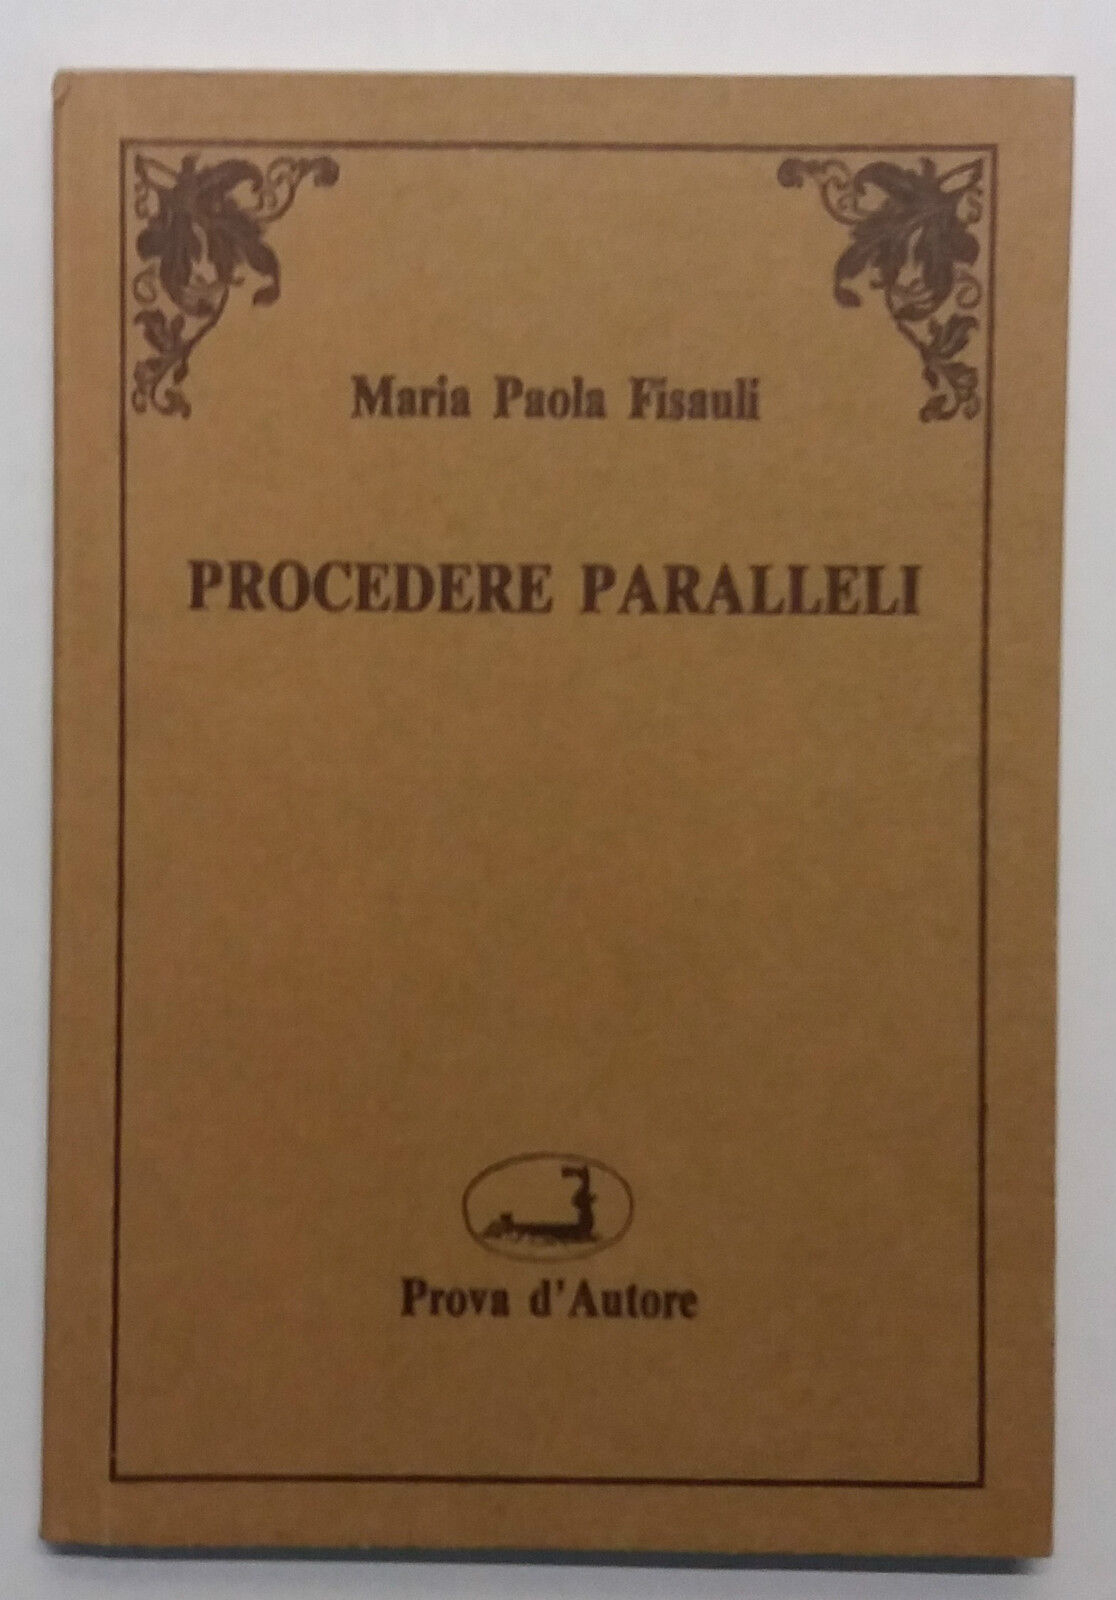 Procedere paralleli - Maria Paola Fisauli - Prova d'Autore - 1989 - G